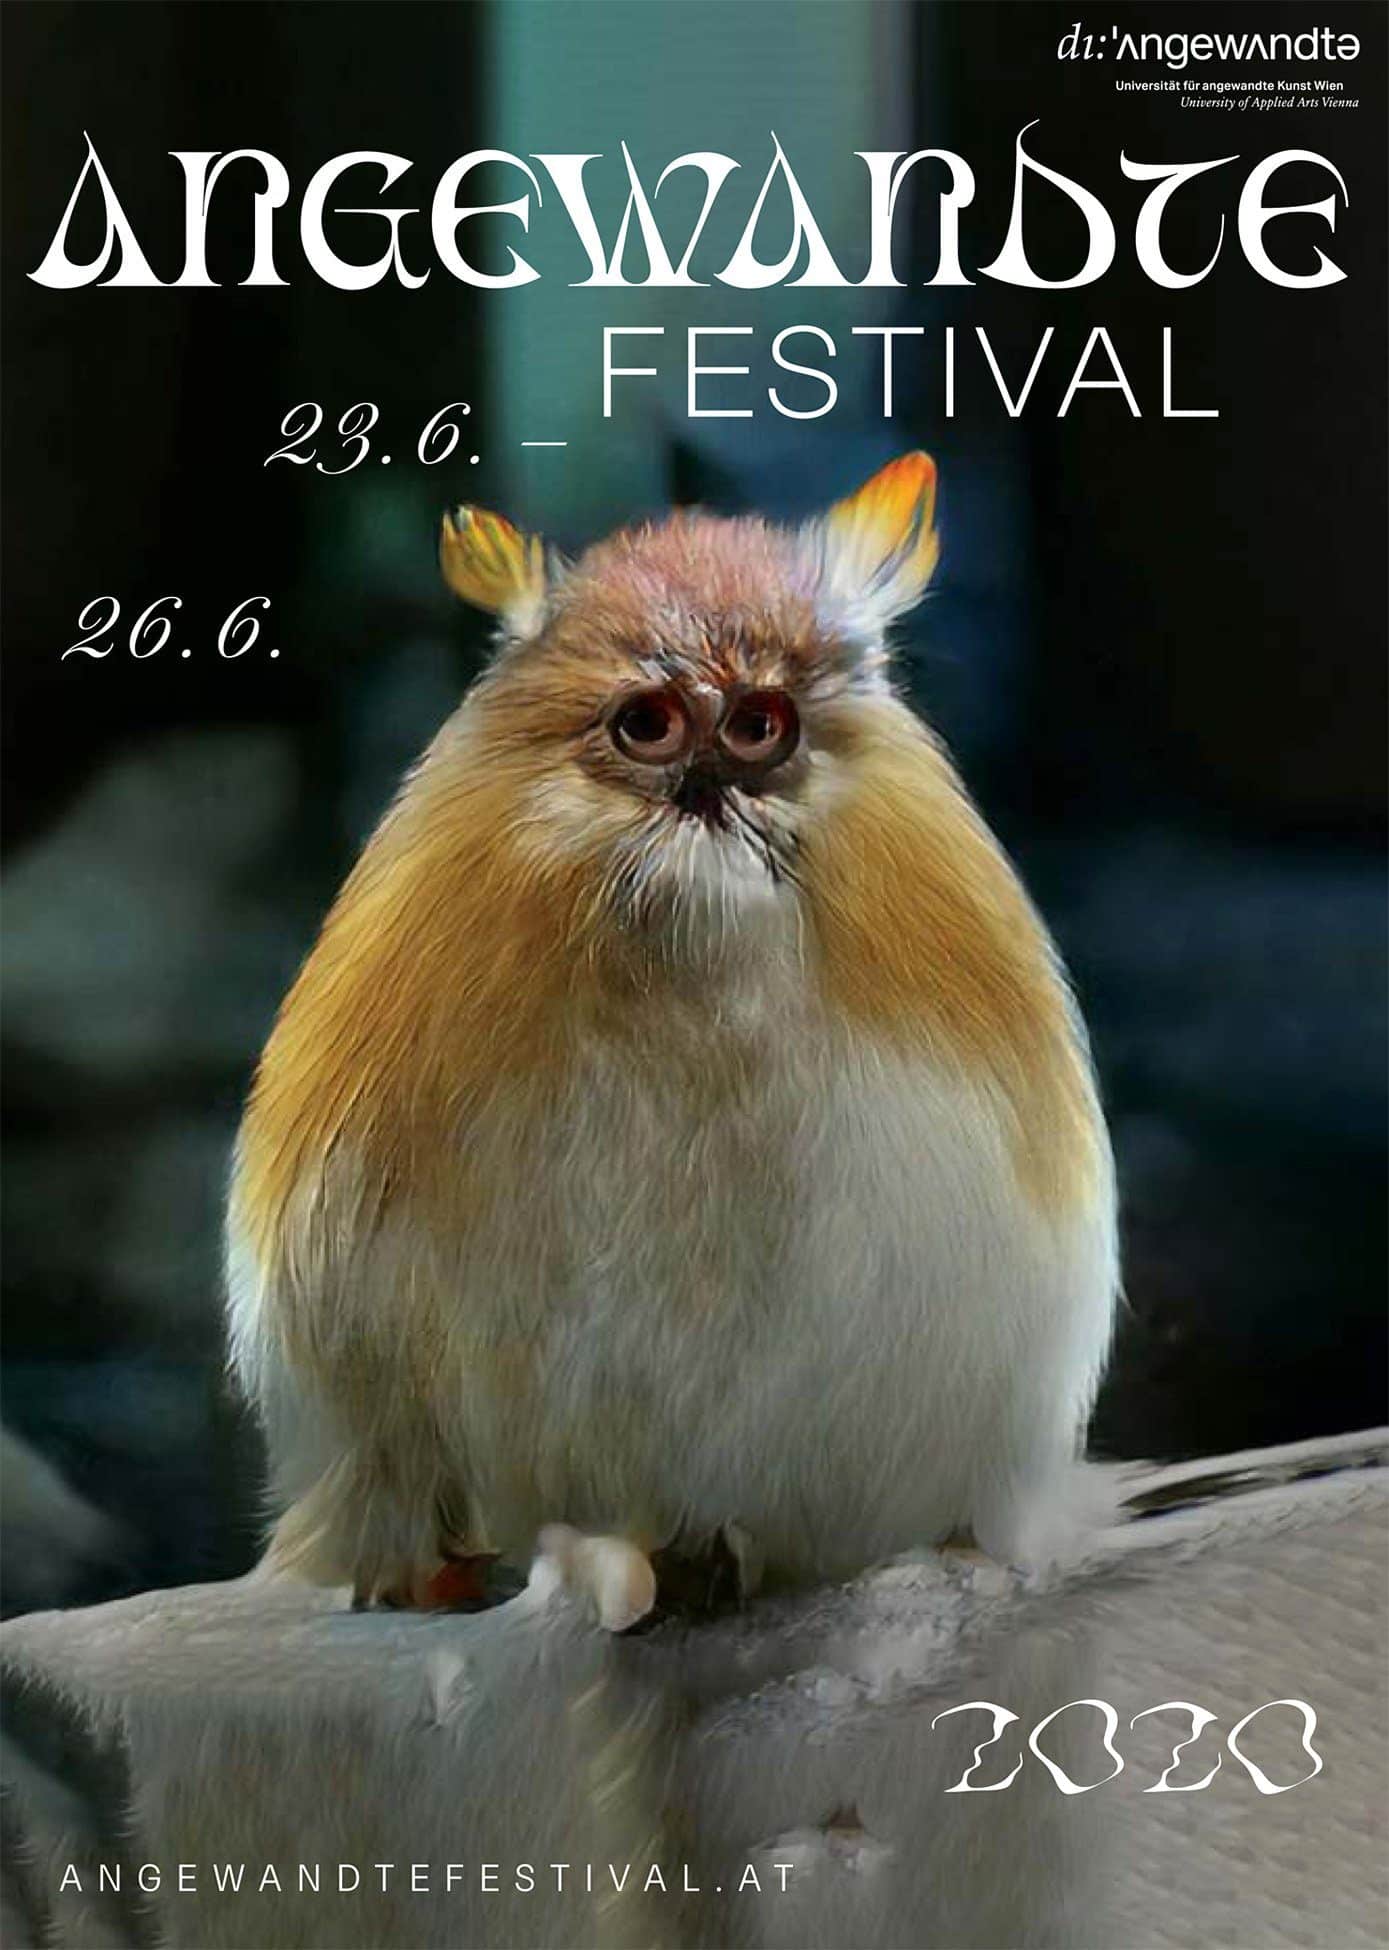 Angewandte Festival 2020 - Festivalprogramm der Universität für angewandte Kunst Wien